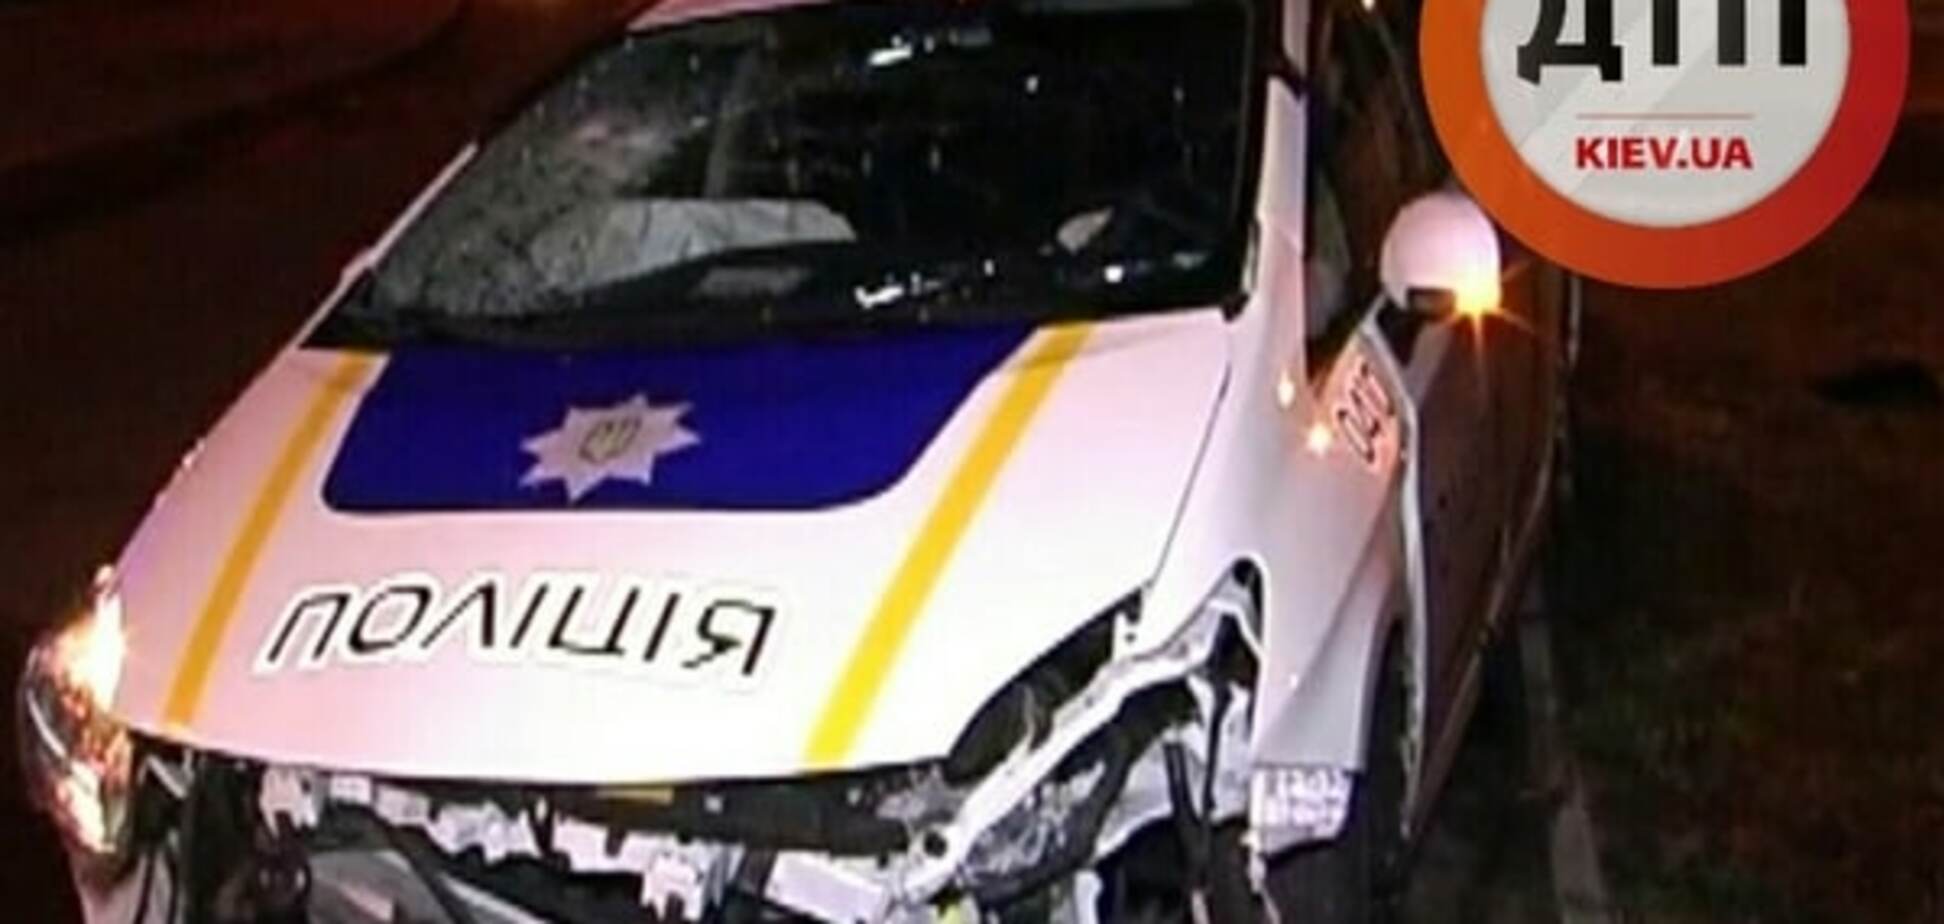 У Києві поліція потрапила в жорстоке ДТП: фото з місця аварії